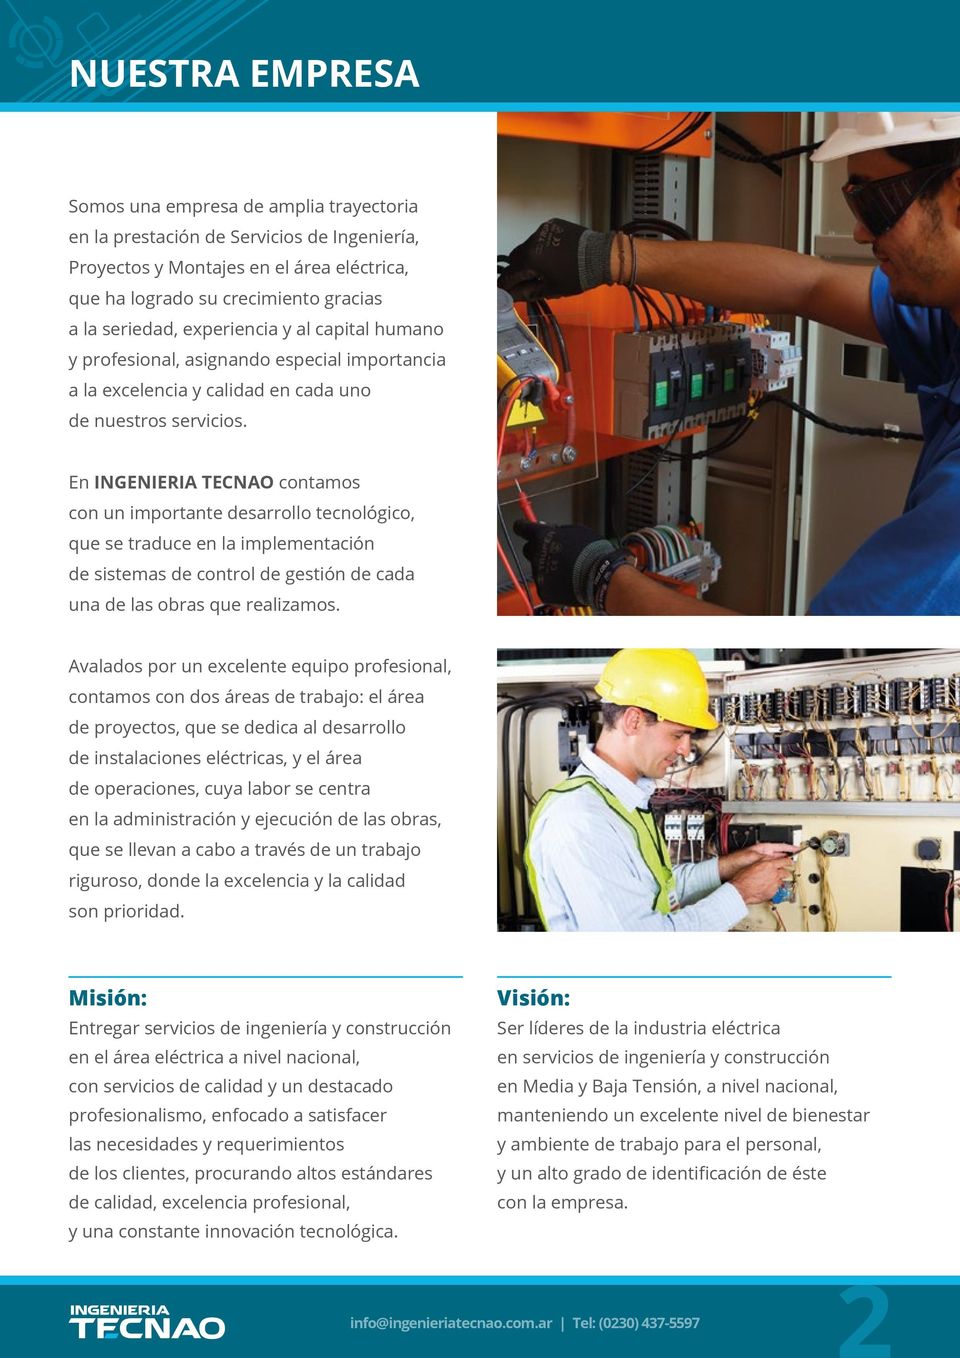 En INGENIERIA TECNAO contamos con un importante desarrollo tecnológico, que se traduce en la implementación de sistemas de control de gestión de cada una de las obras que realizamos.